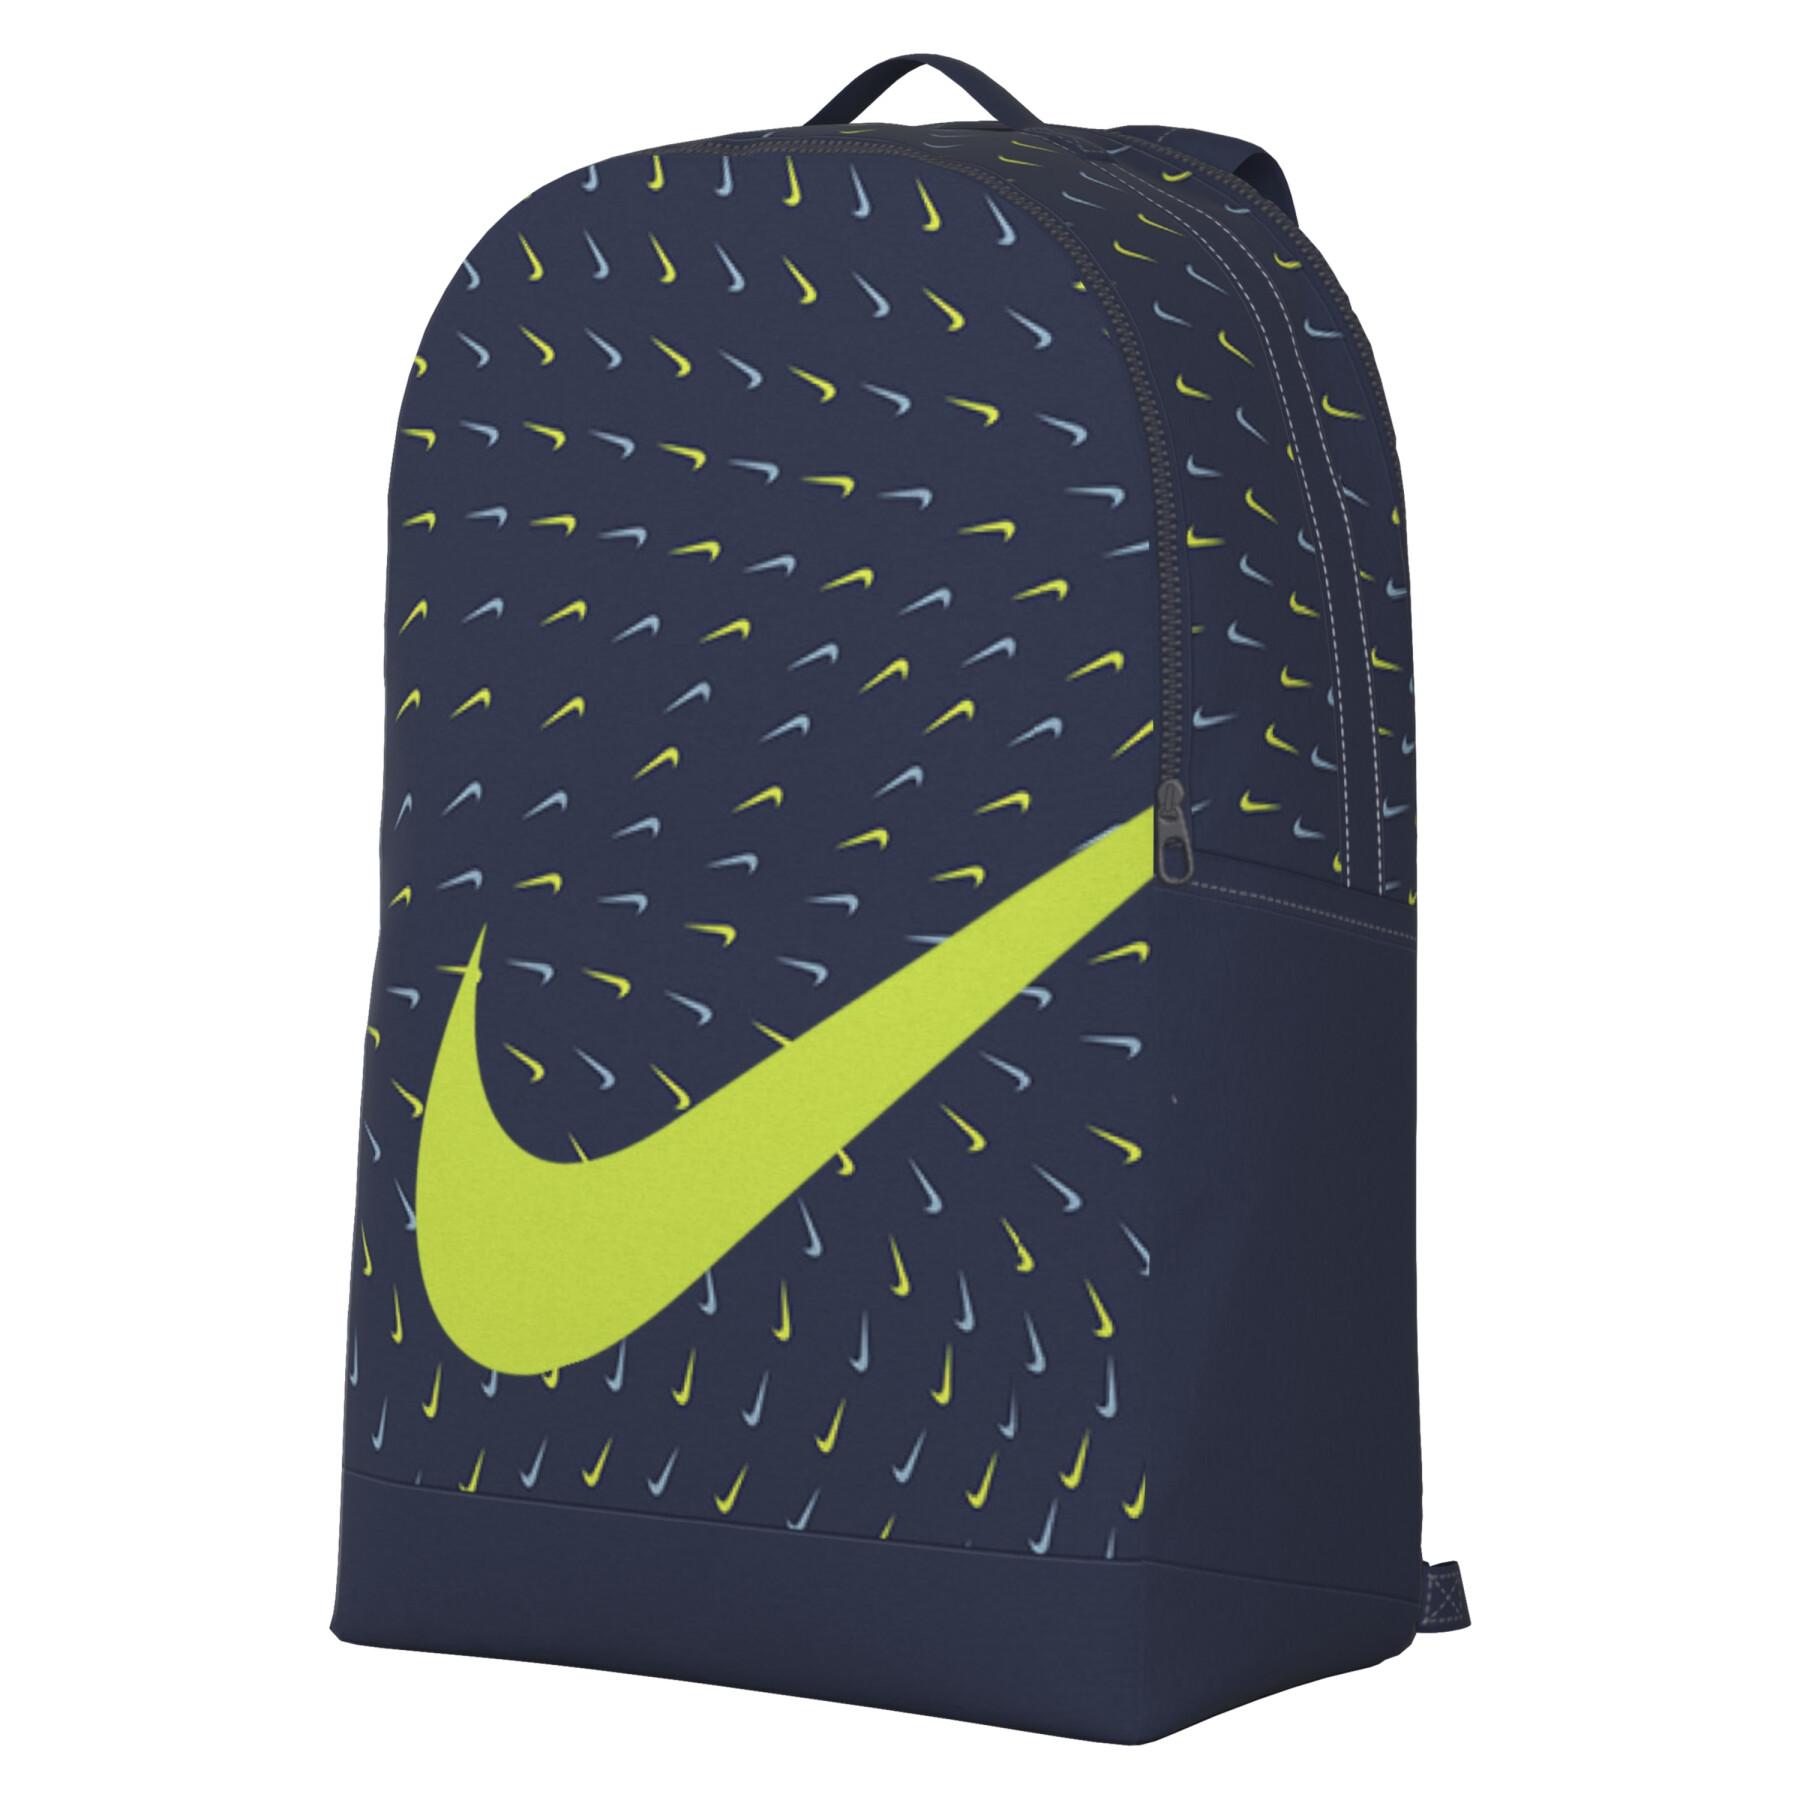 Plecak dla dzieci Nike Brasilia